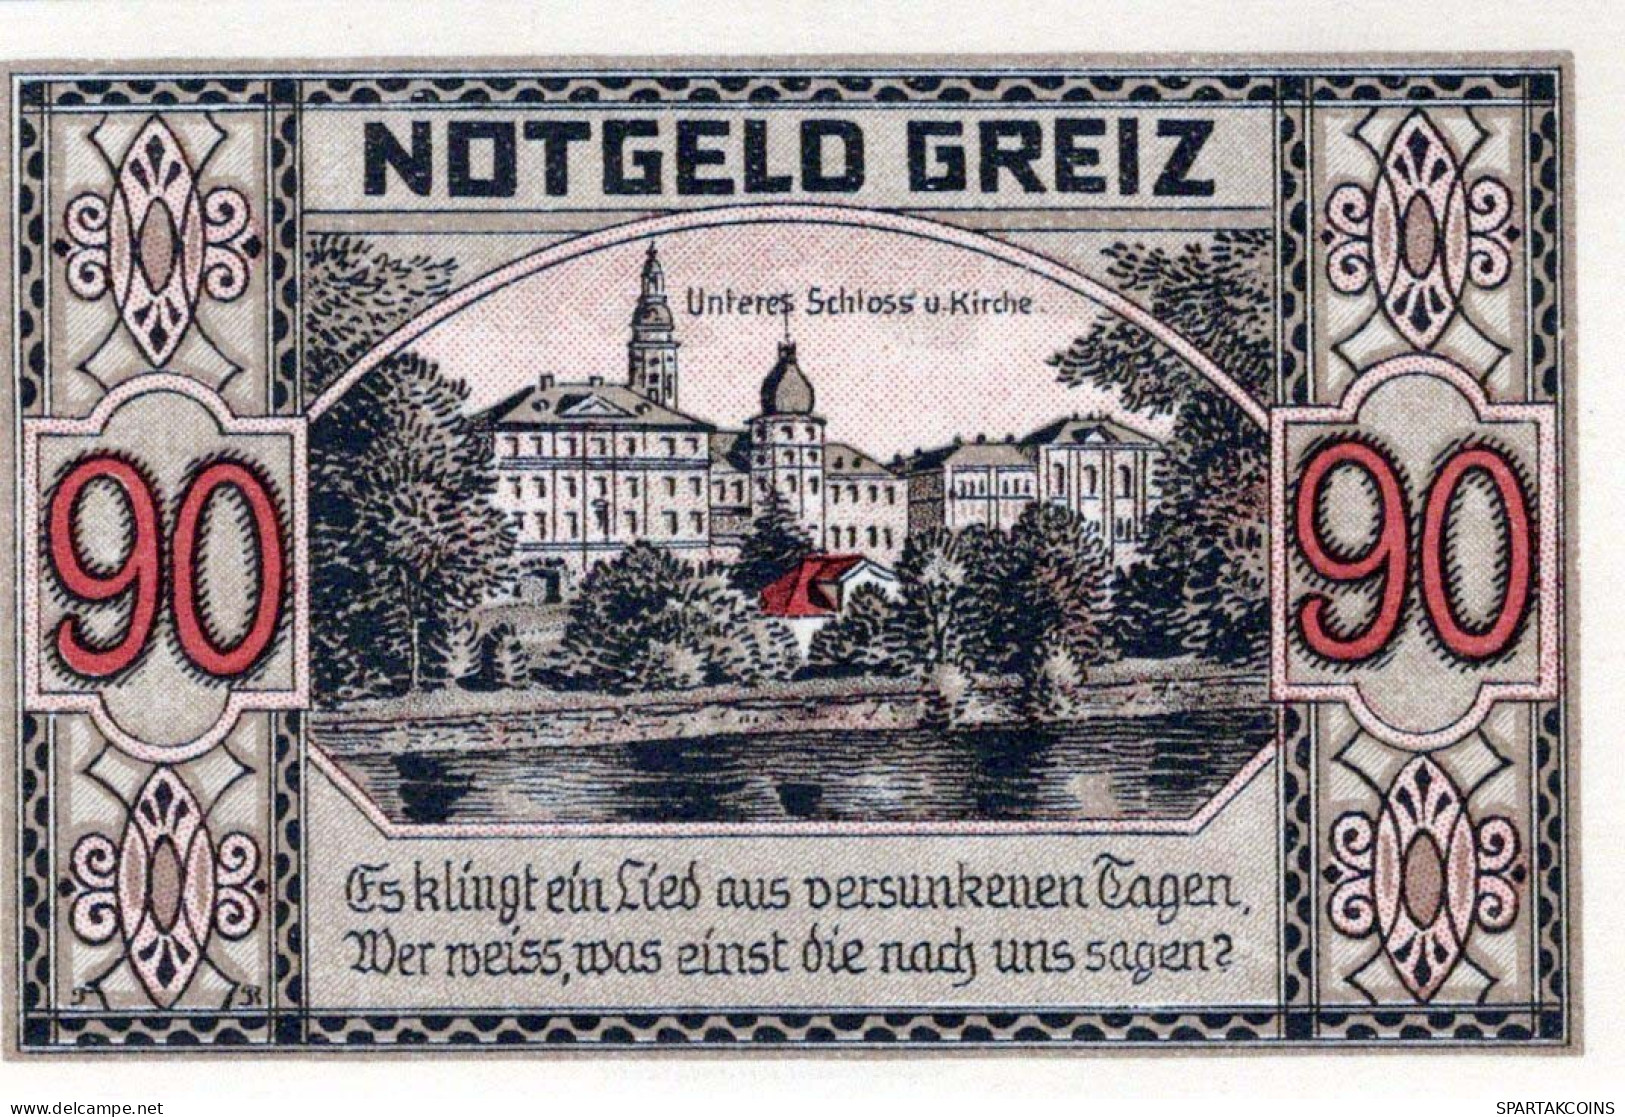 90 PFENNIG 1921 Stadt GREIZ Thuringia UNC DEUTSCHLAND Notgeld Banknote #PH700 - Lokale Ausgaben